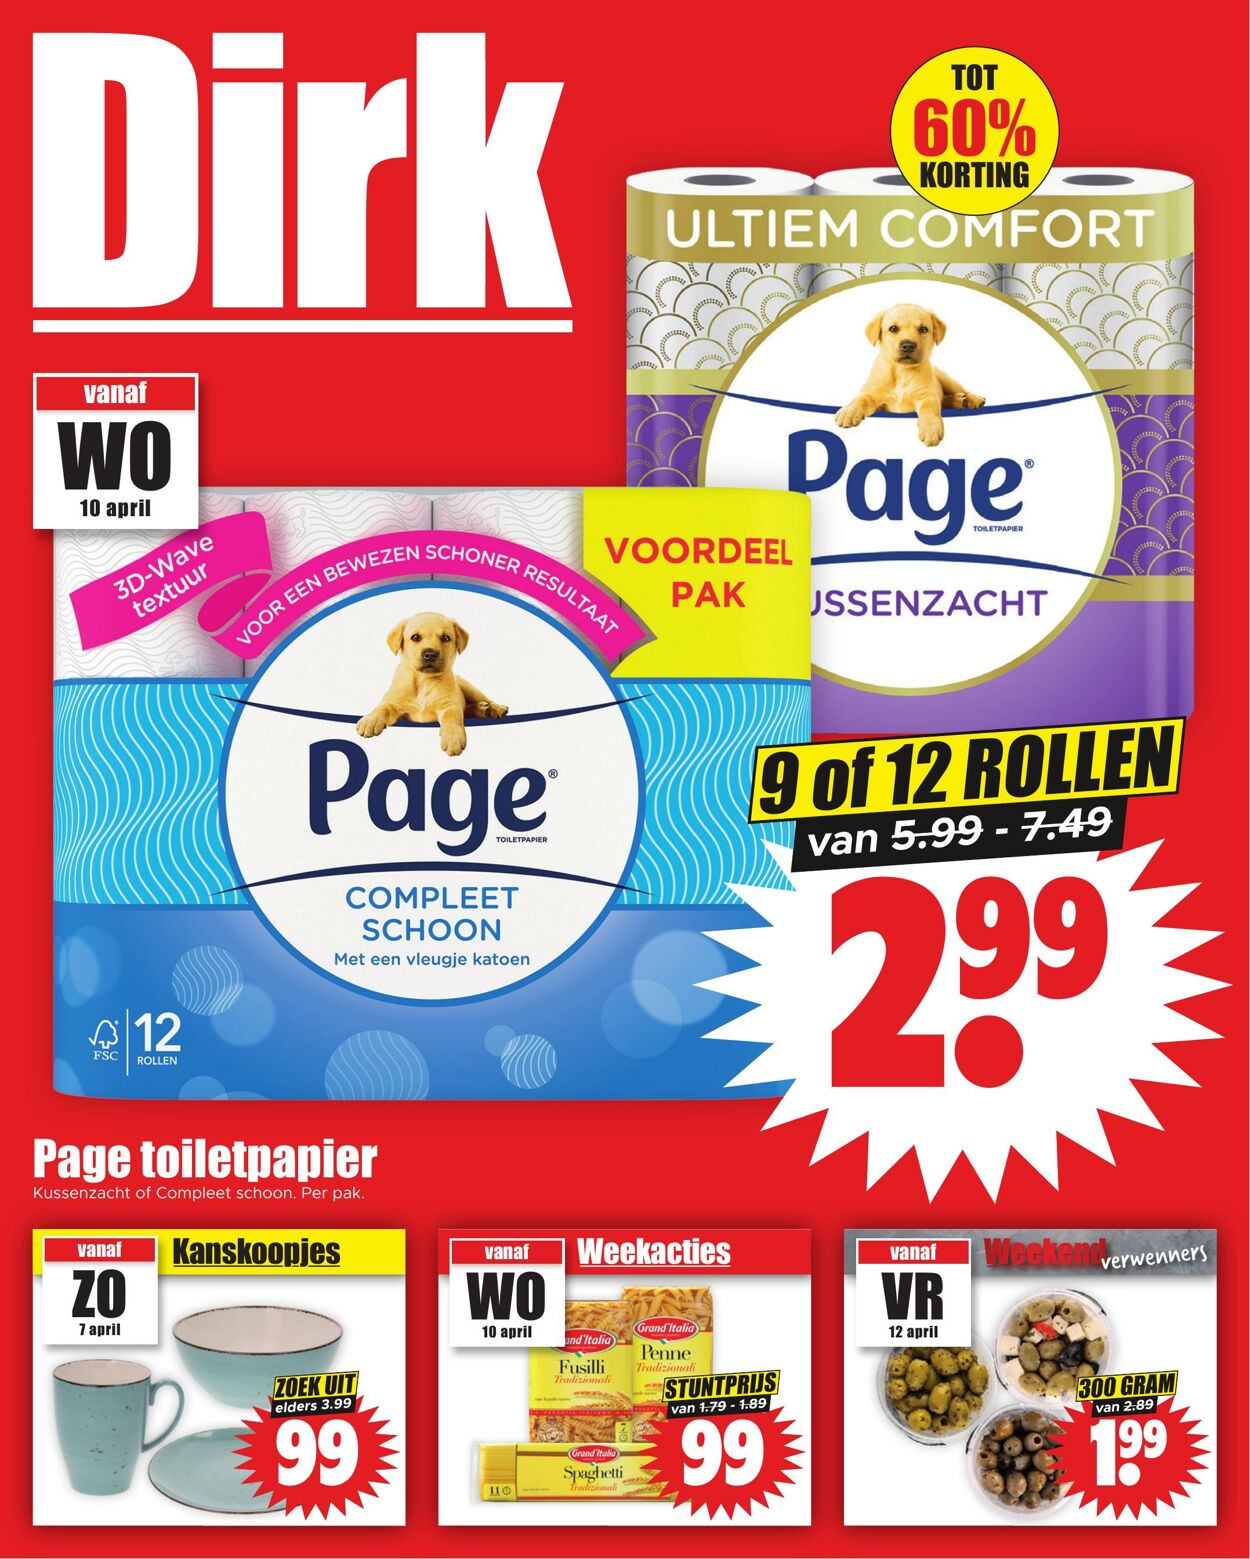 Folder Dirk - Dirk Folder Horizontaal - aanbiedingen wo-do - Pagina 1 10 apr., 2024 - 16 apr., 2024